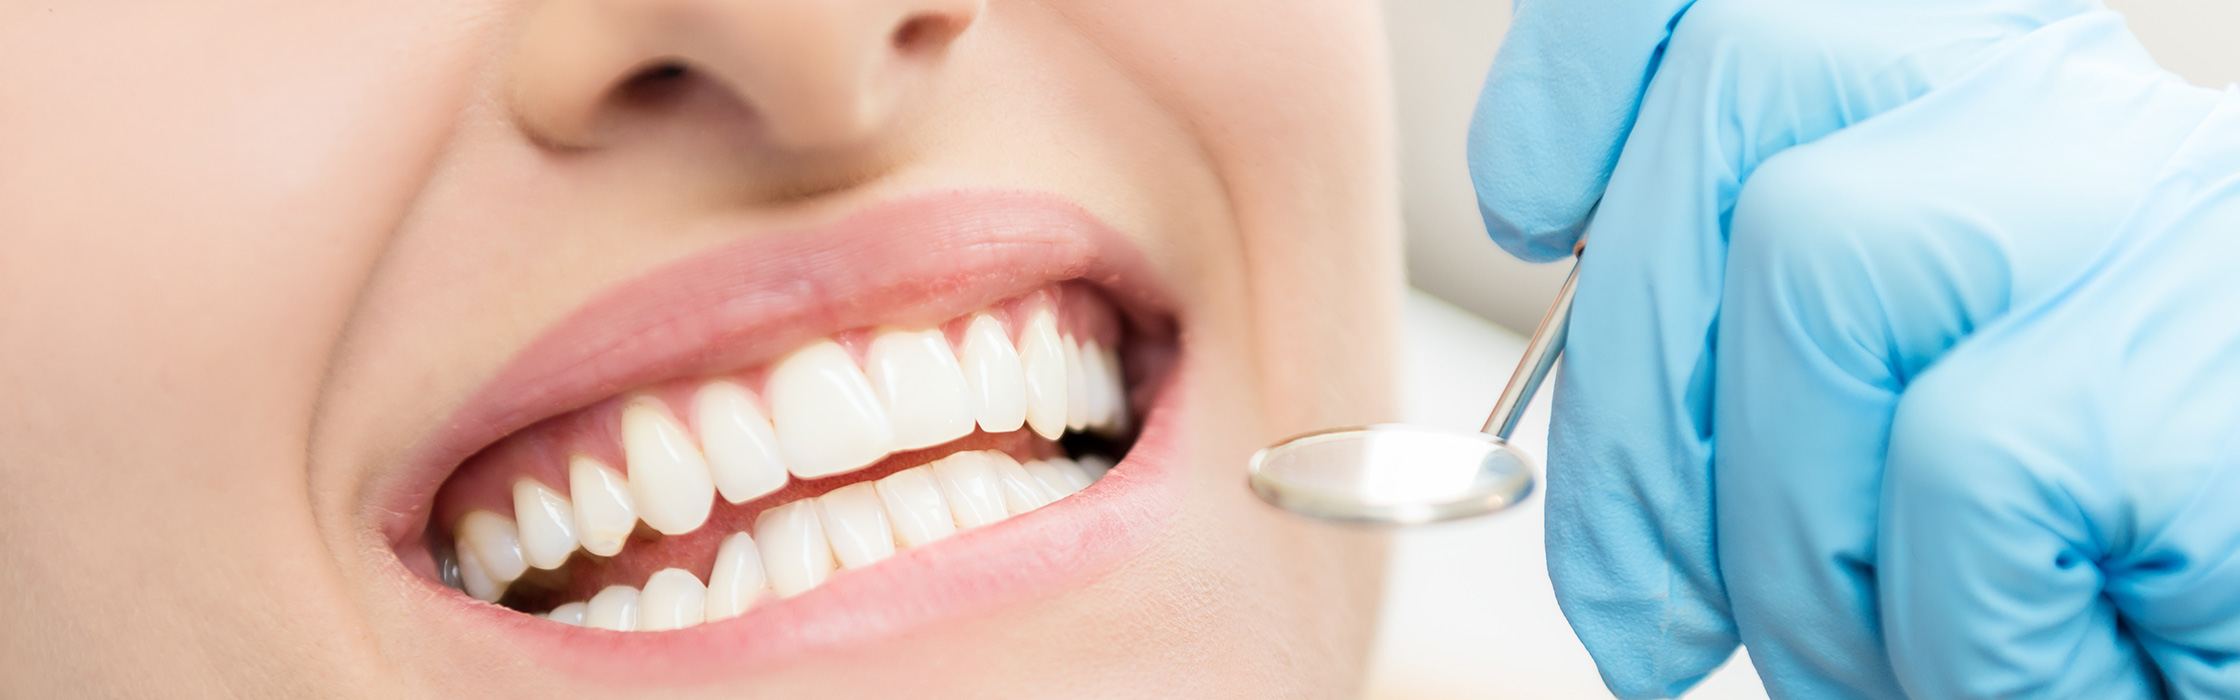 Parodontologie – für gesunde Zähne und gesundes Zahnfleisch